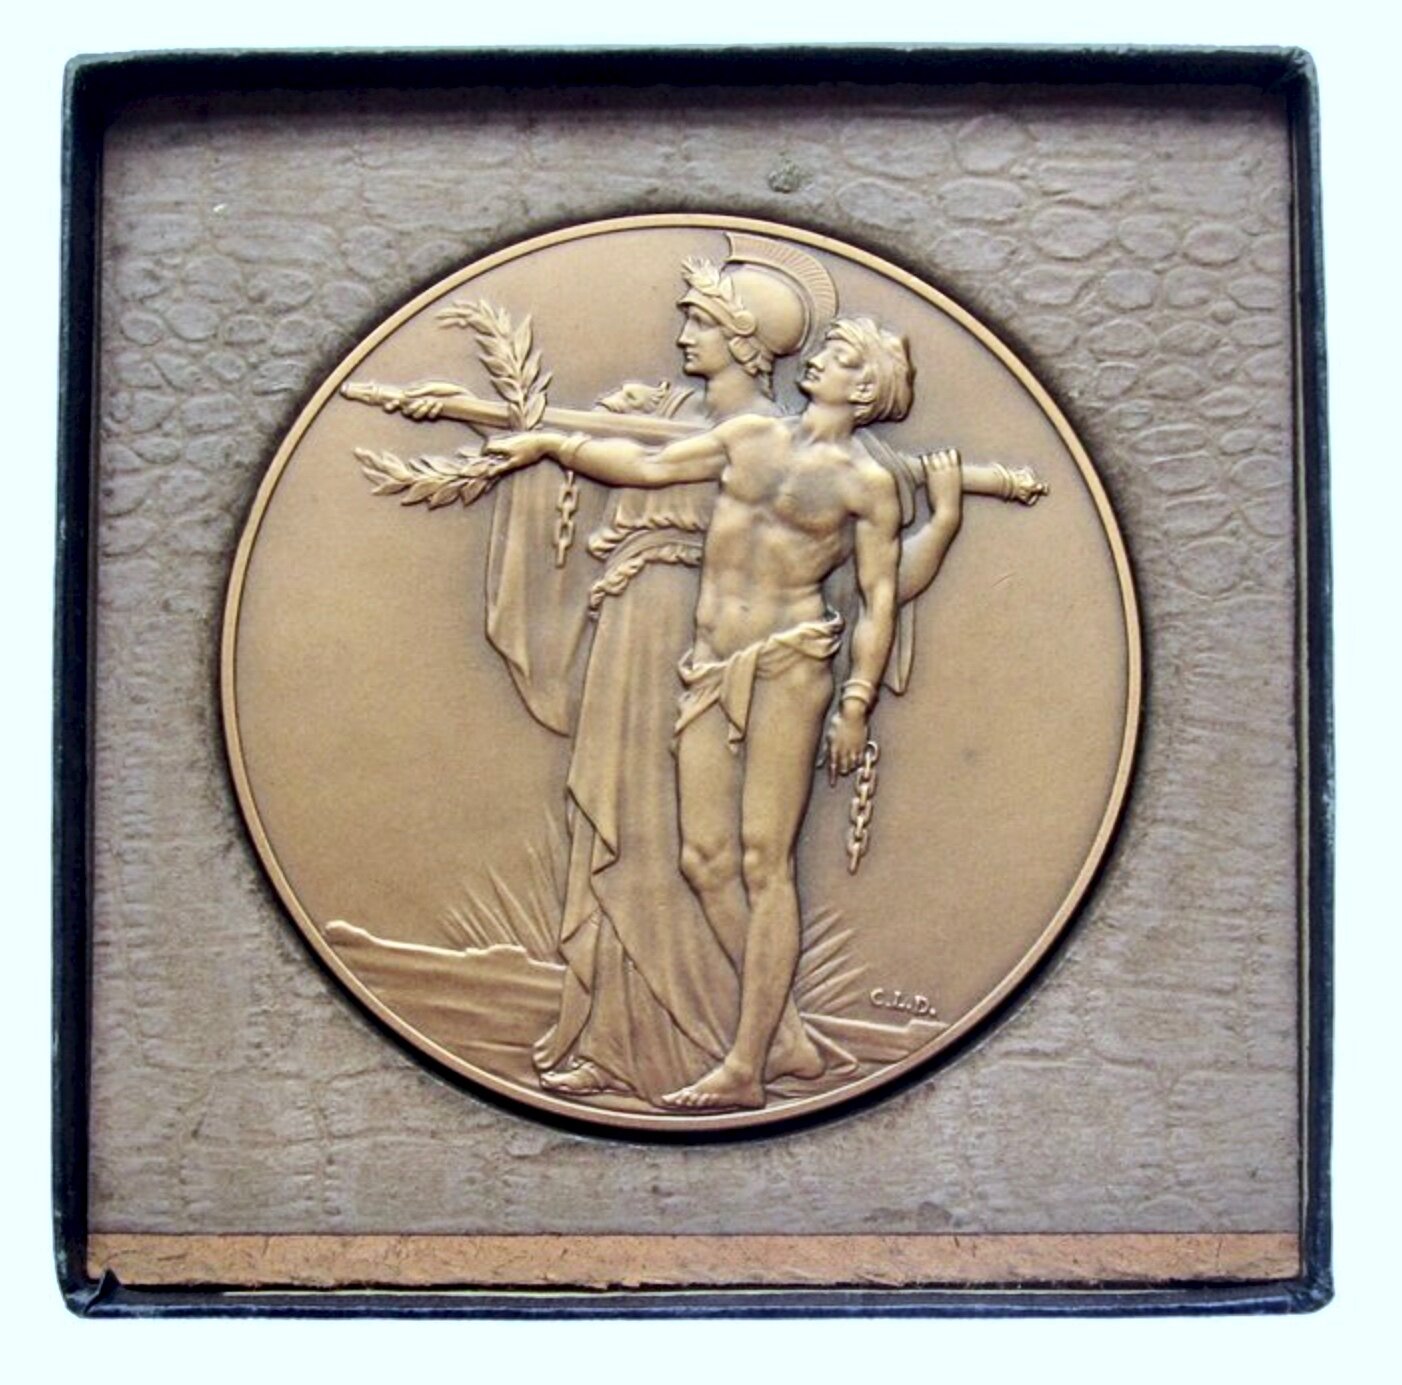 1928 10th Anniversary of the Armistice 76mm bronze medal in box E2008a BHM 4132 AUNC